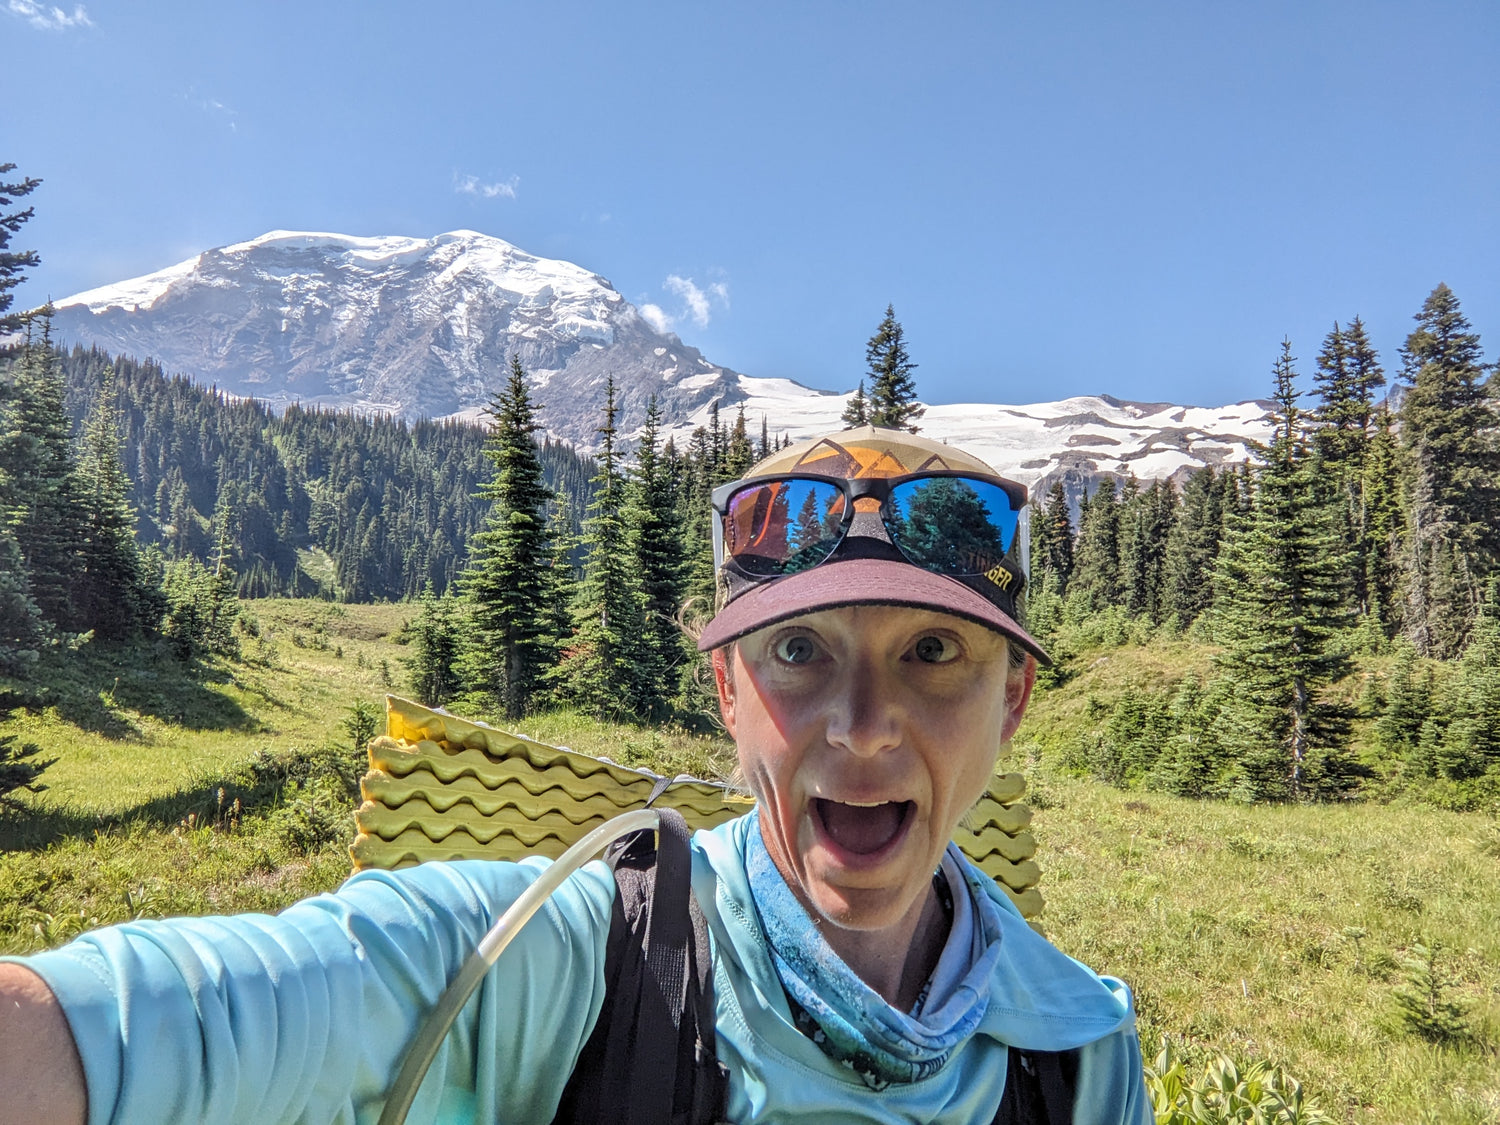 The Wonderland Trail - An Impromptu Adventure Around Mt. Rainier by Heather Hoechst